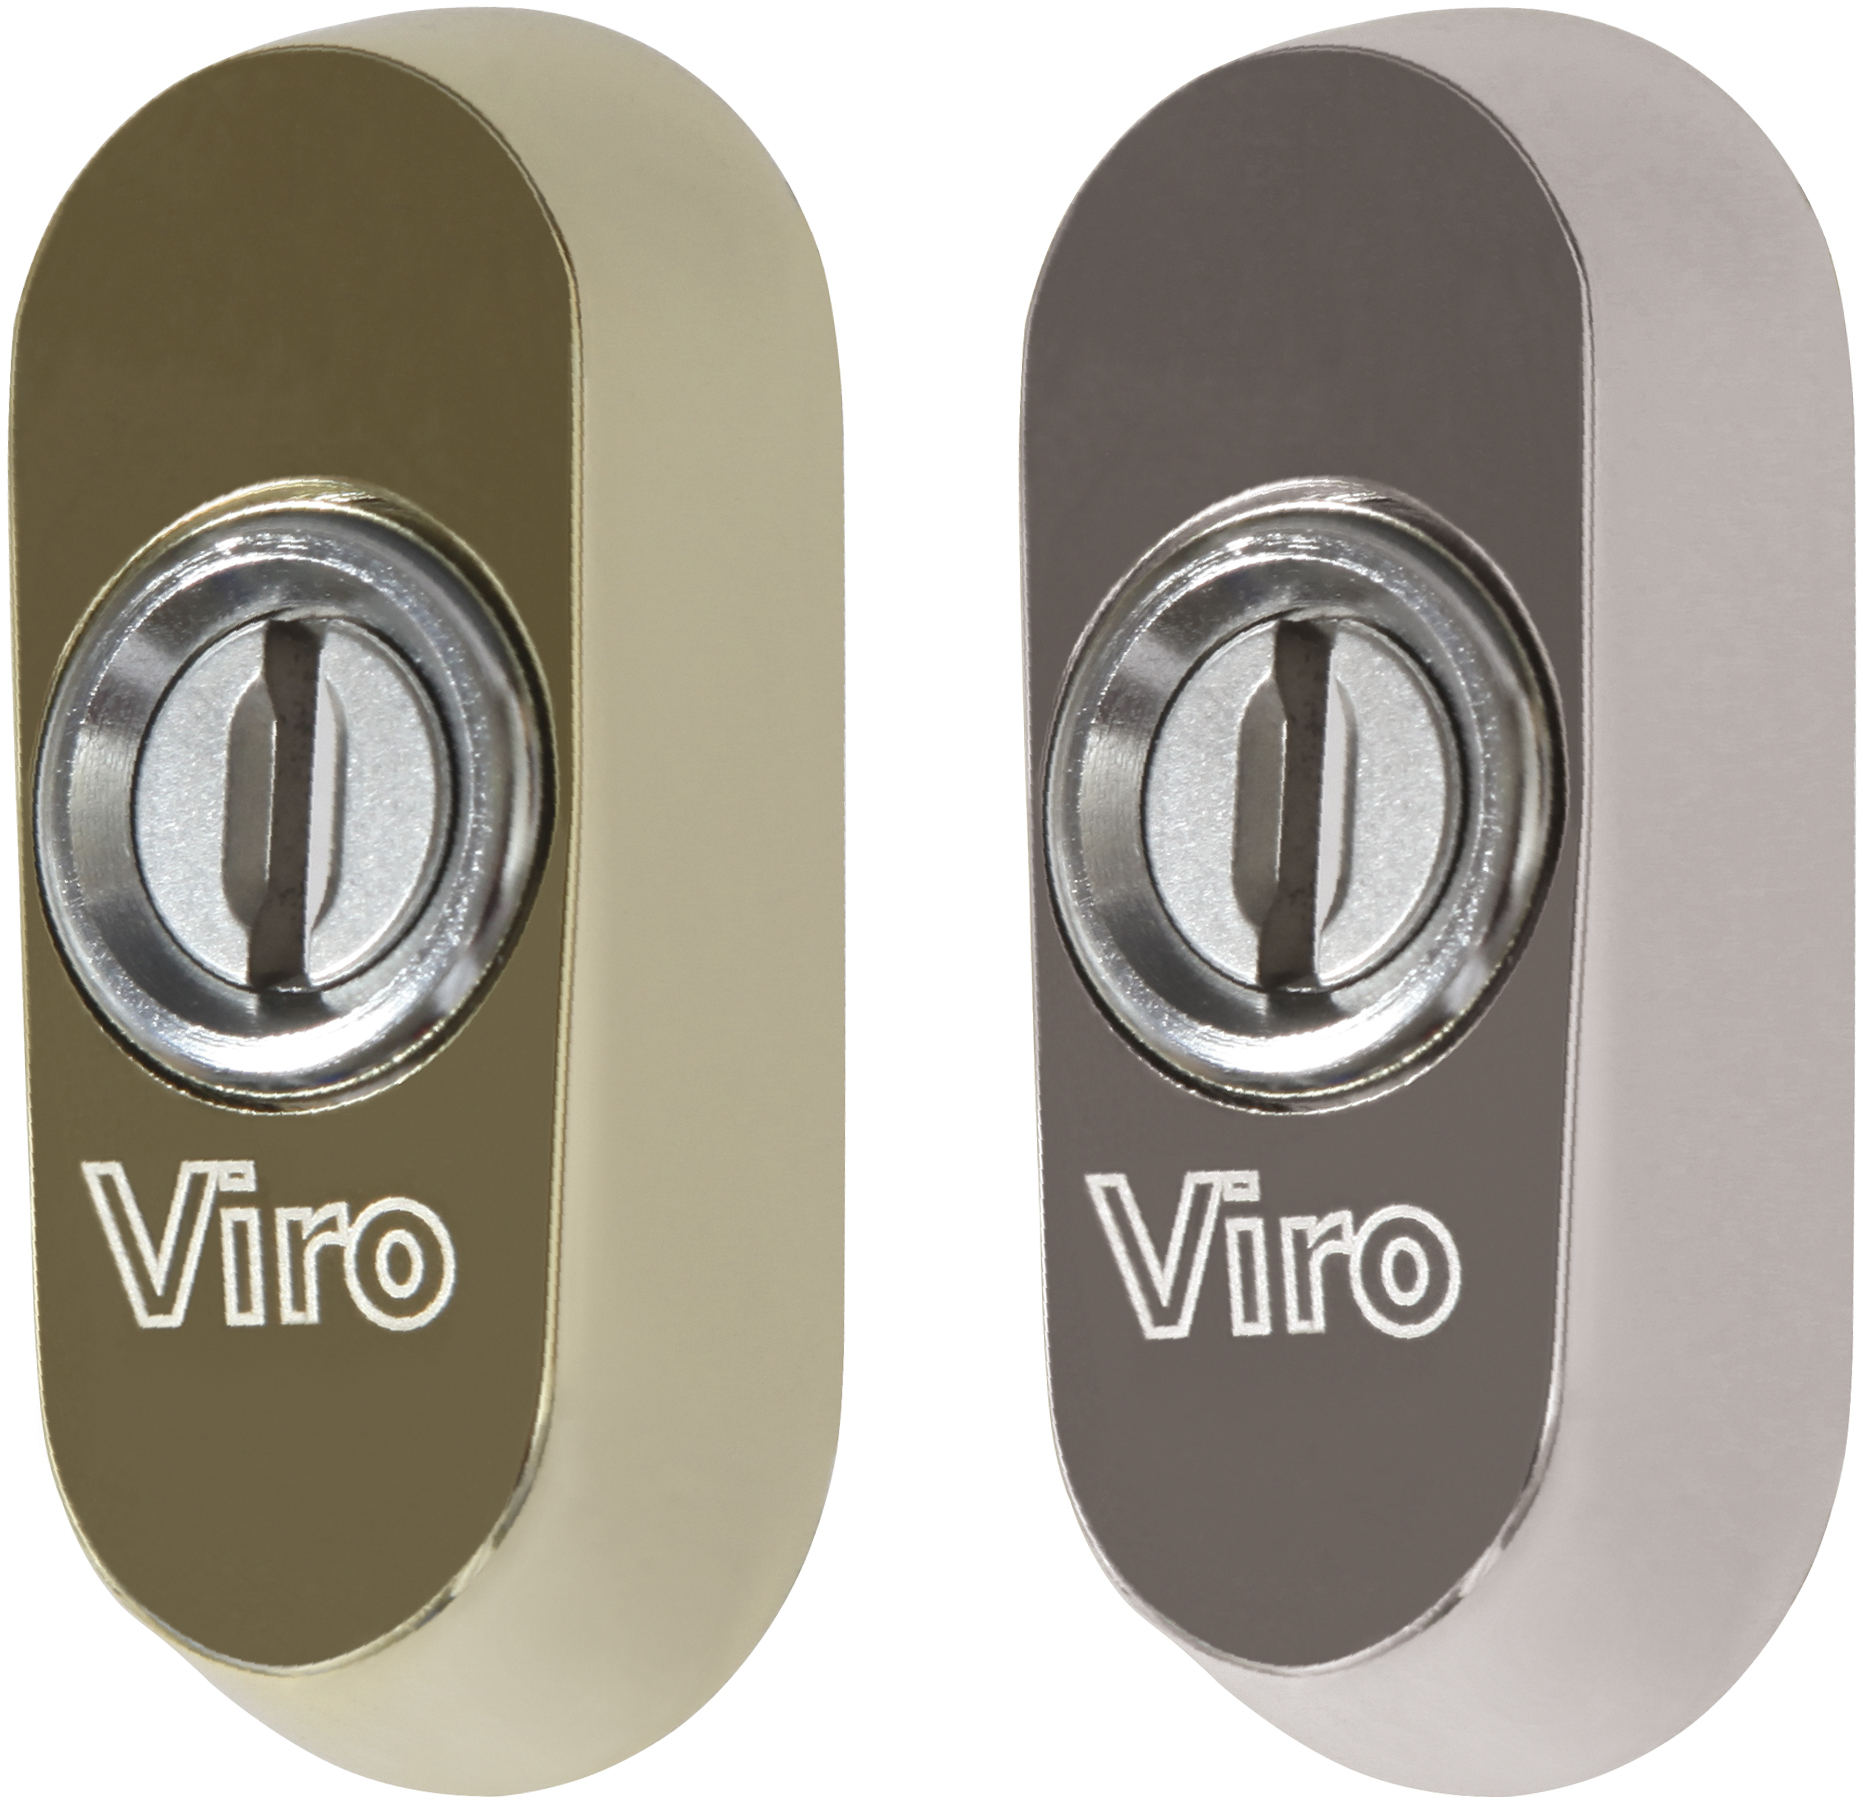 VIRO - Escudos de seguridad ovales para SPRANGA UNIVERSAL y/o cerraduras de embutir